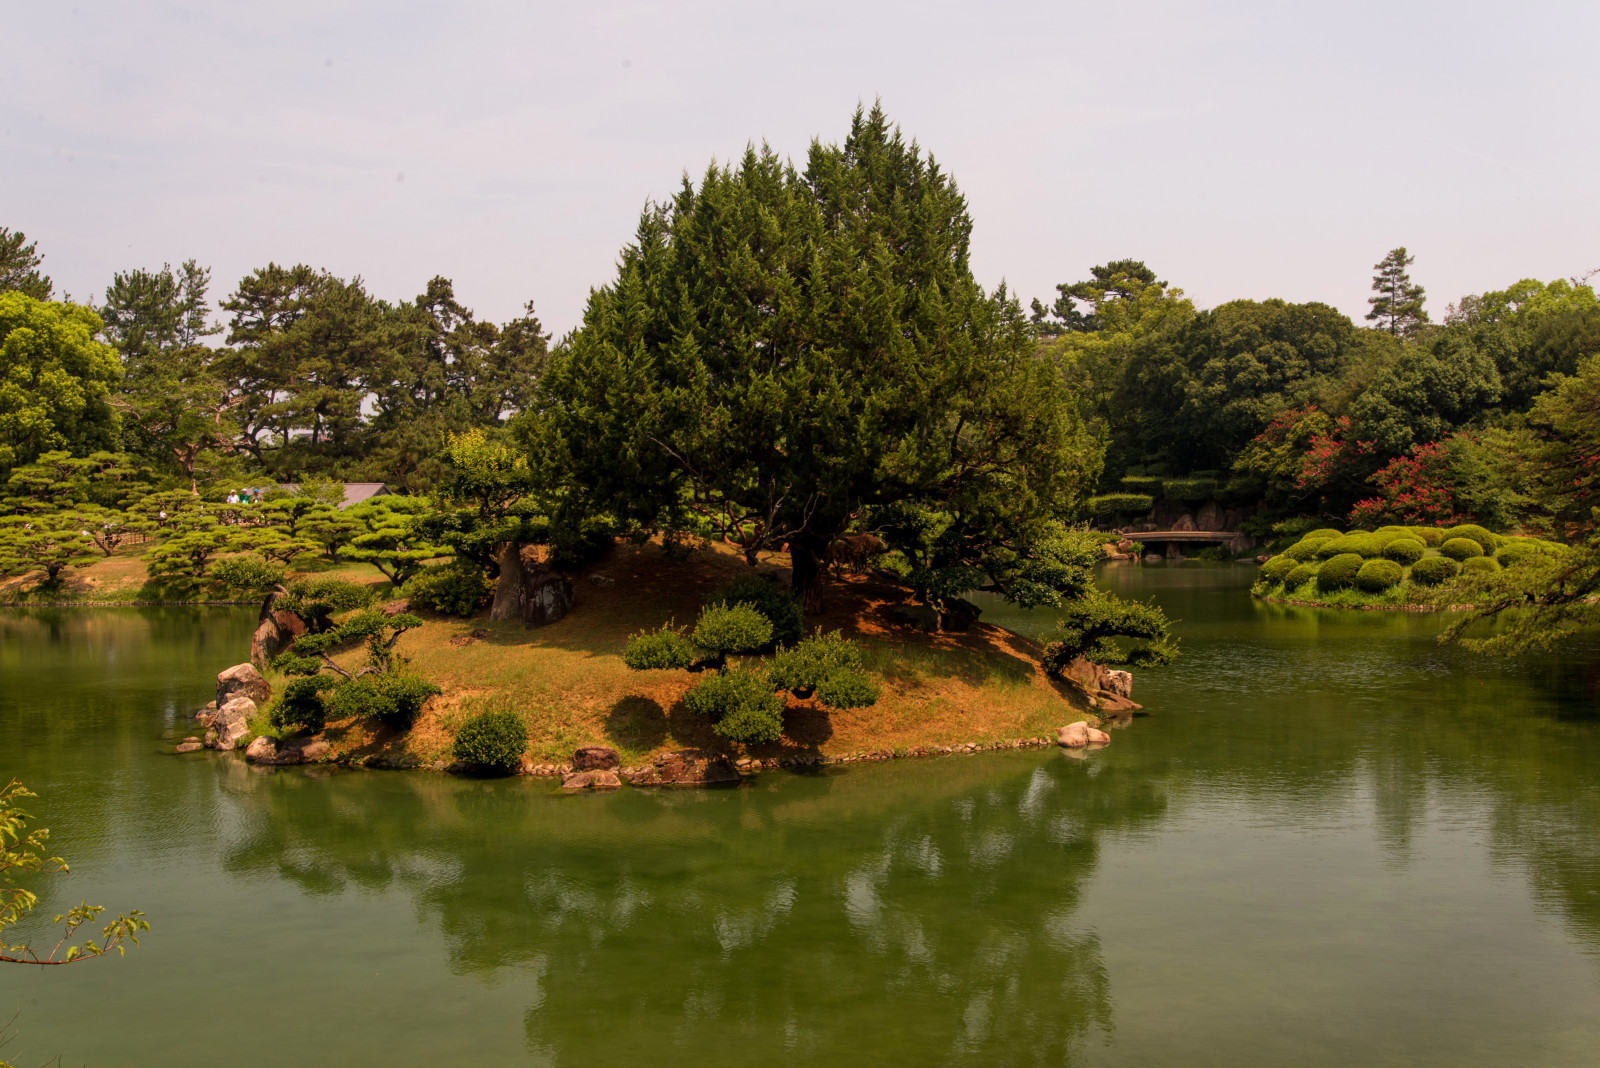 自然, 公园, 景观, 树木, 日本, 照片, 池塘, 高松